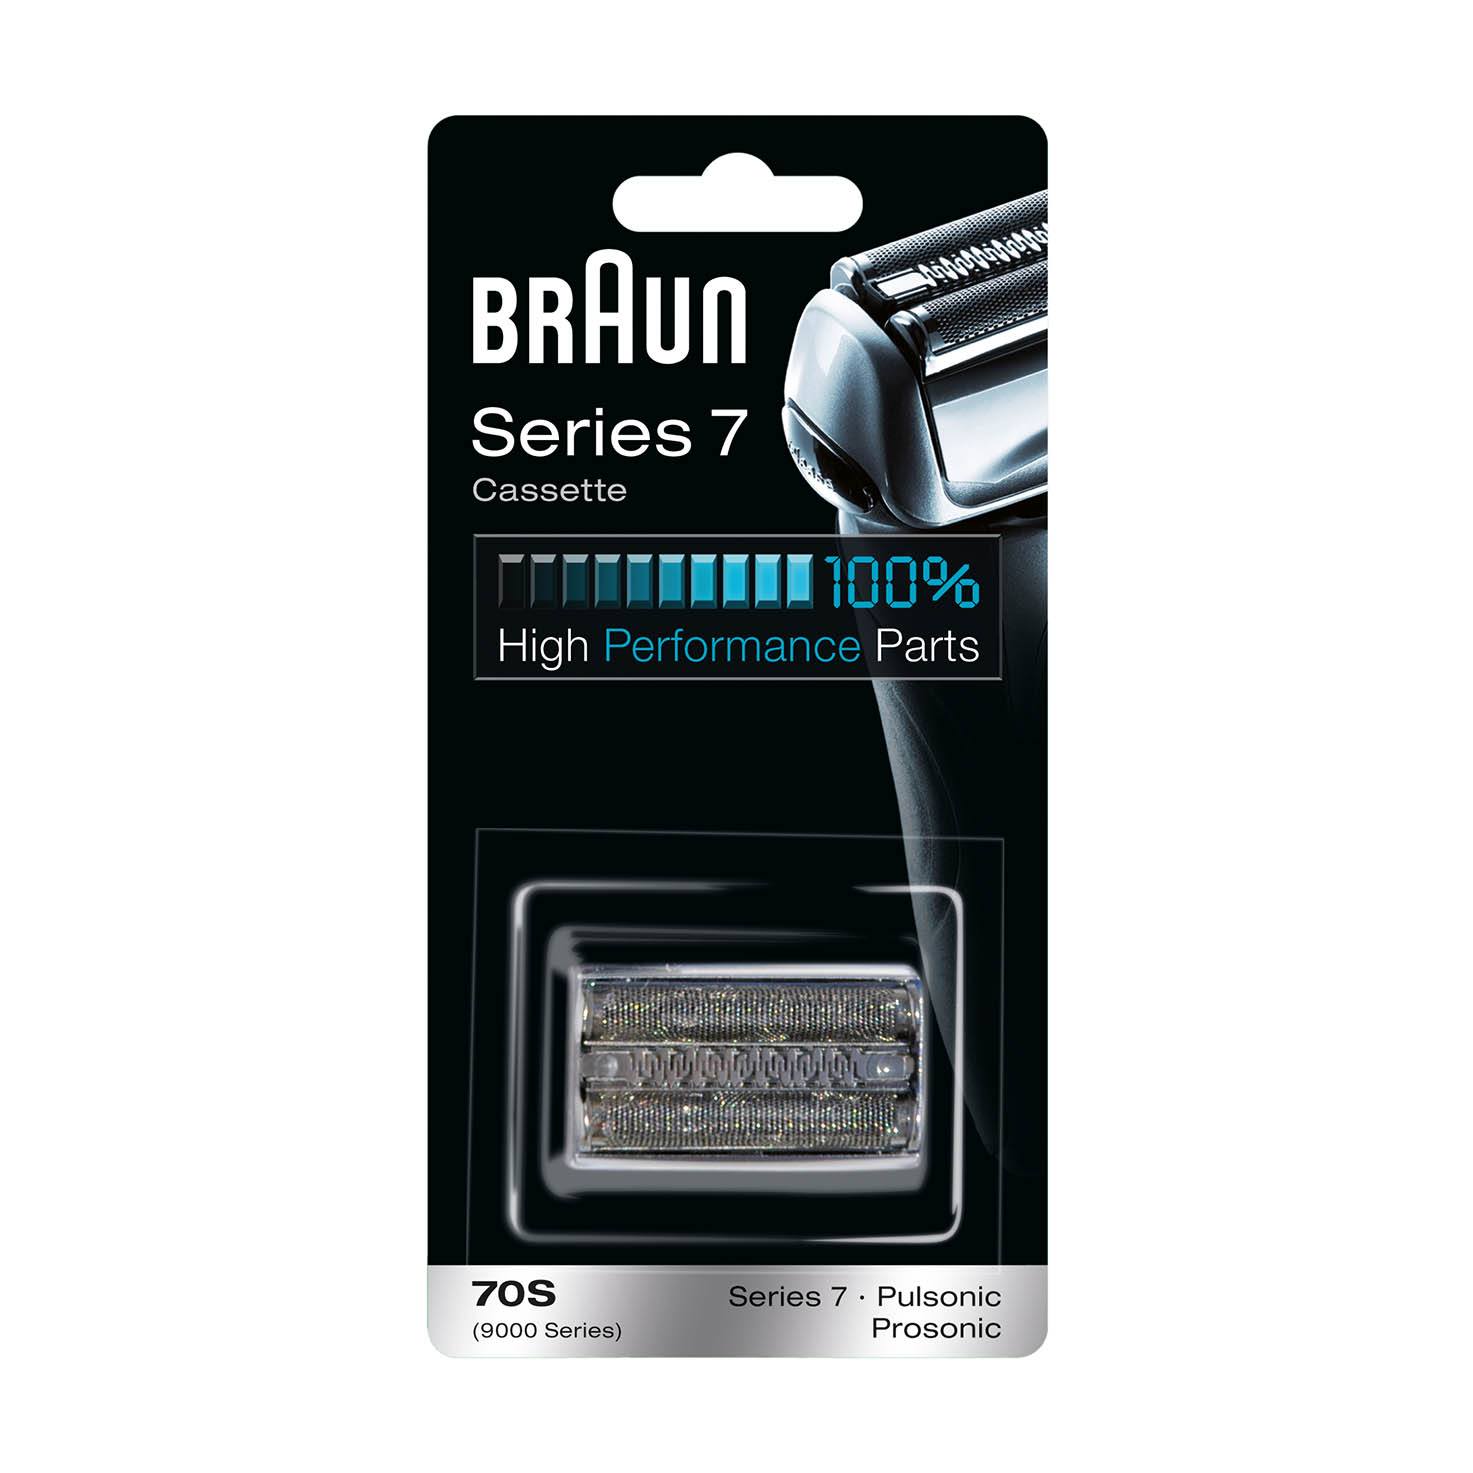 Pachet de schimb Braun Combi 70S Cassette, argintiu, pentru Series 7